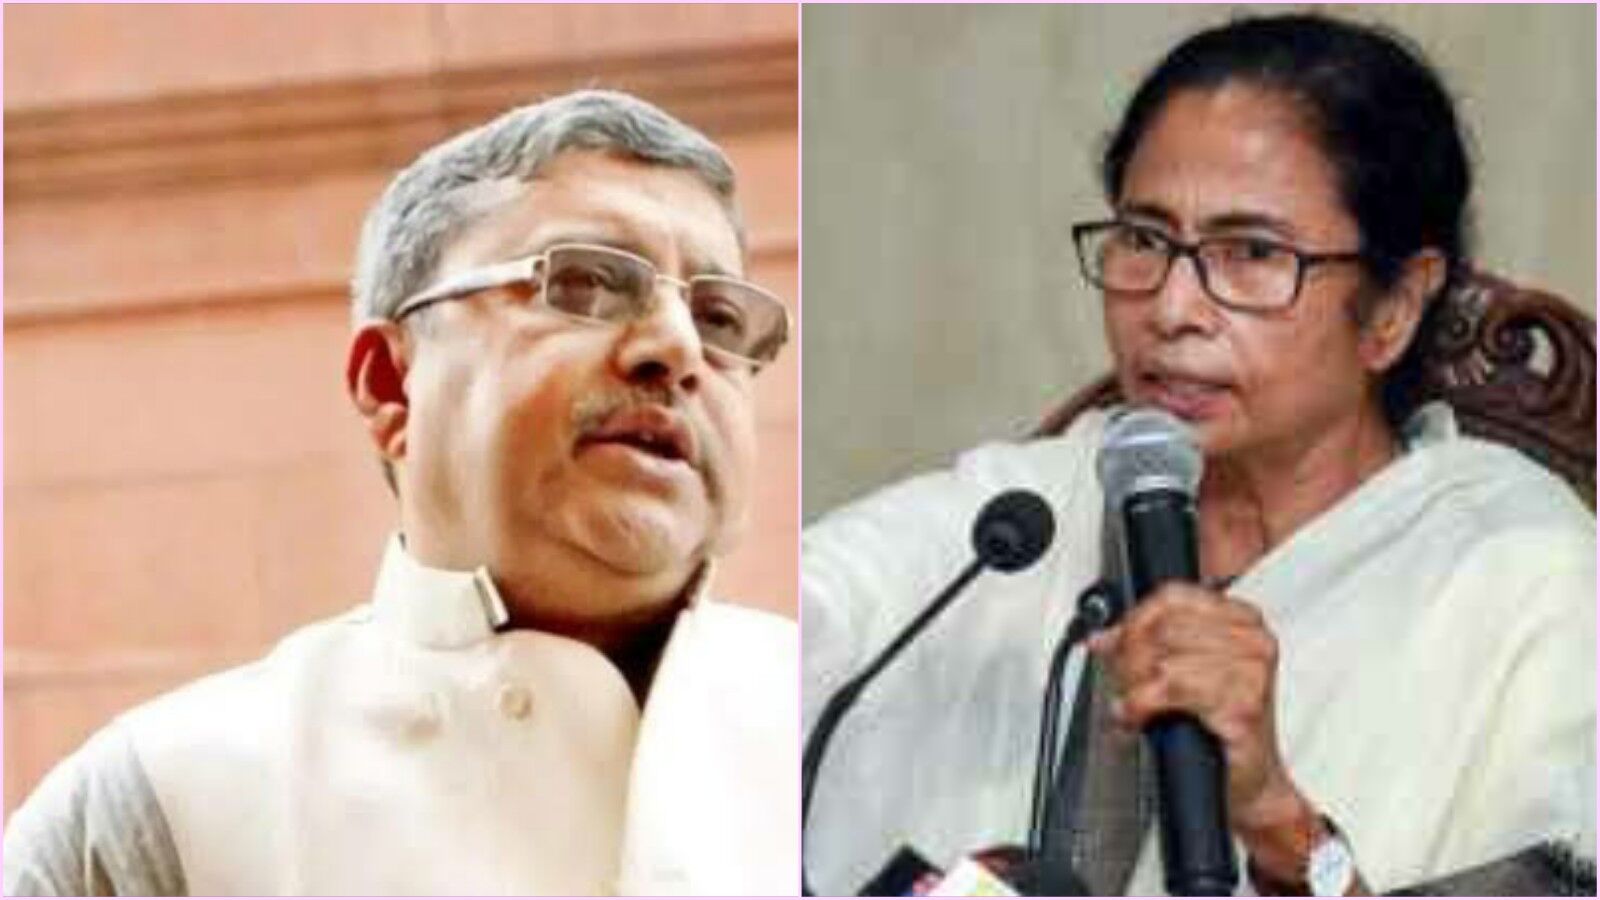 बंगाल चुनावों के पहले सीएम ममता बनर्जी और टीएमसी सांसद कल्याण बनर्जी पर बिहार में मुकदमा